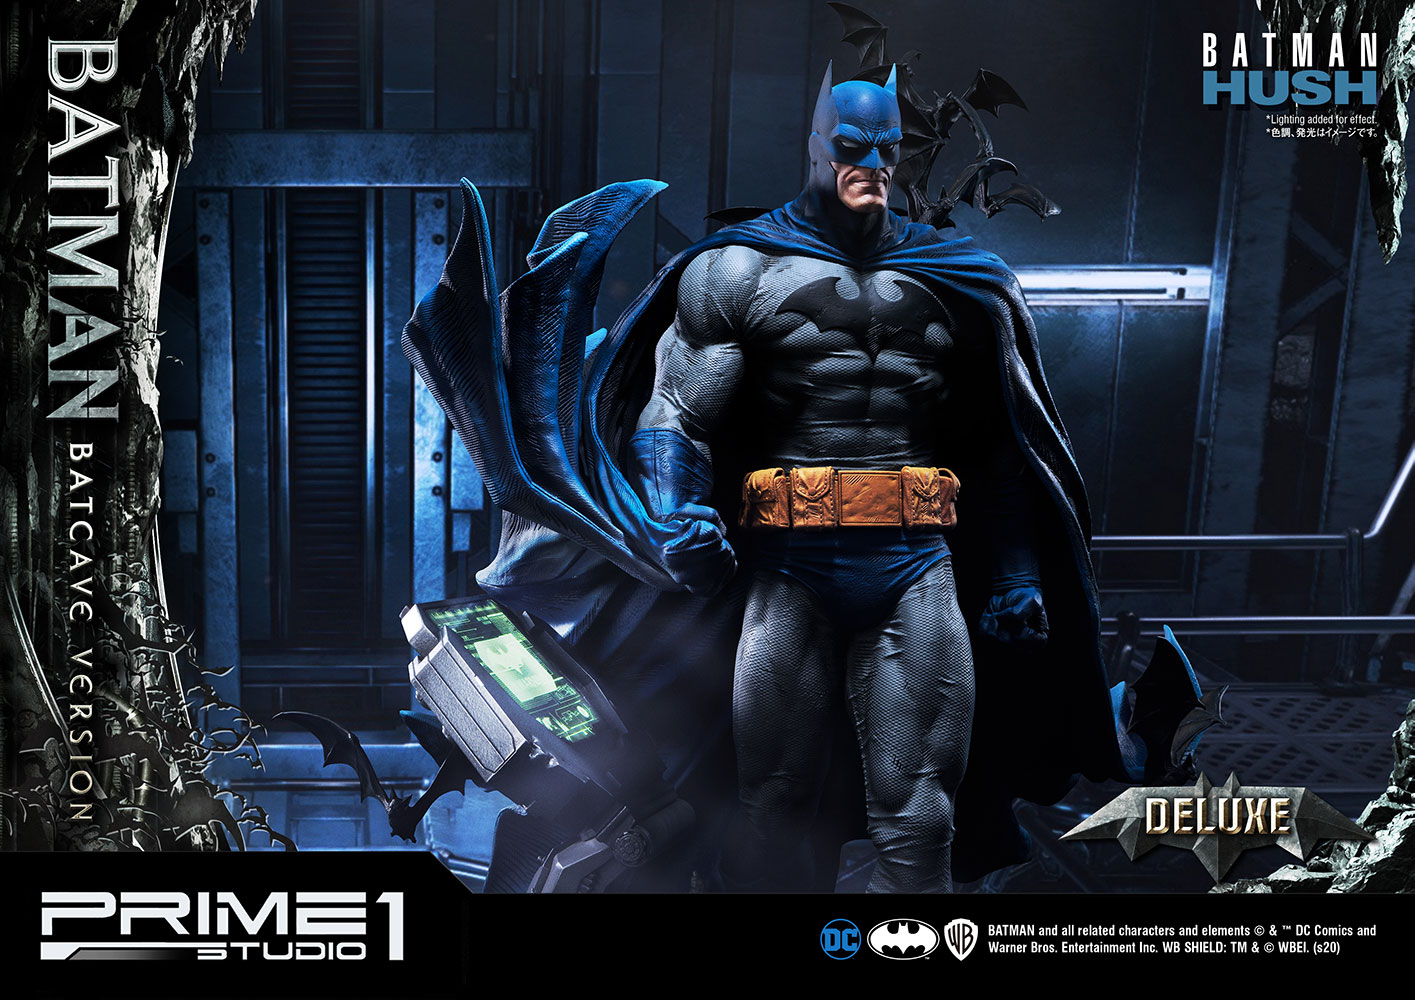 Batman Batcave Deluxe Version (Prototype Shown) View 32